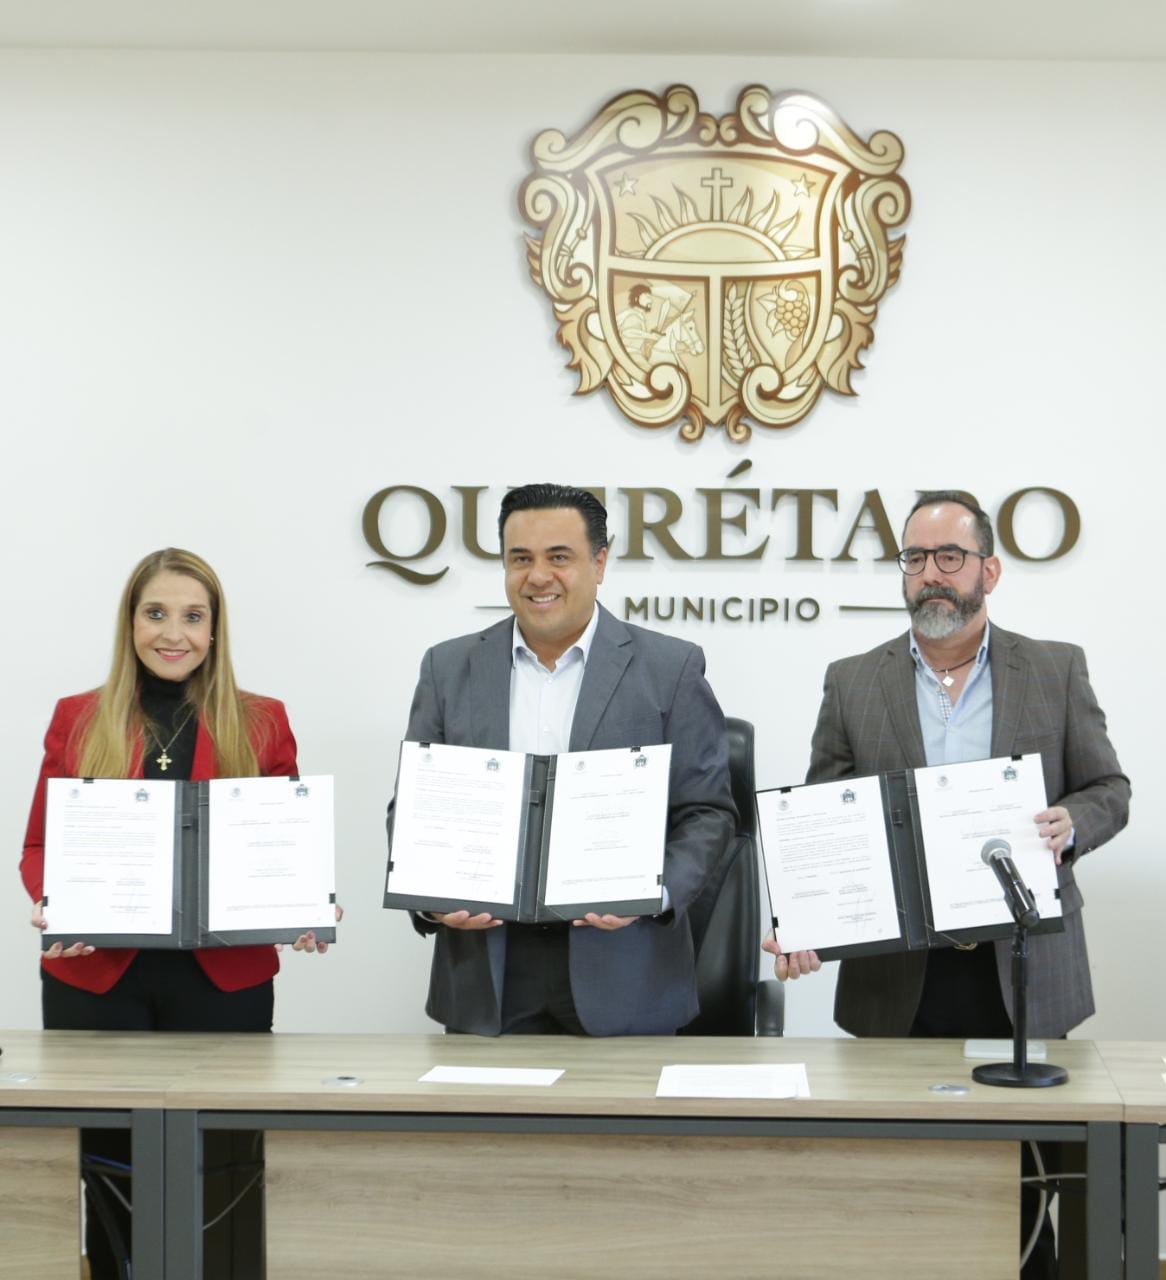 El TEPJF, a través de su Escuela Judicial Electoral, firma Convenio de Colaboración con el Ayuntamiento de Querétaro <br />